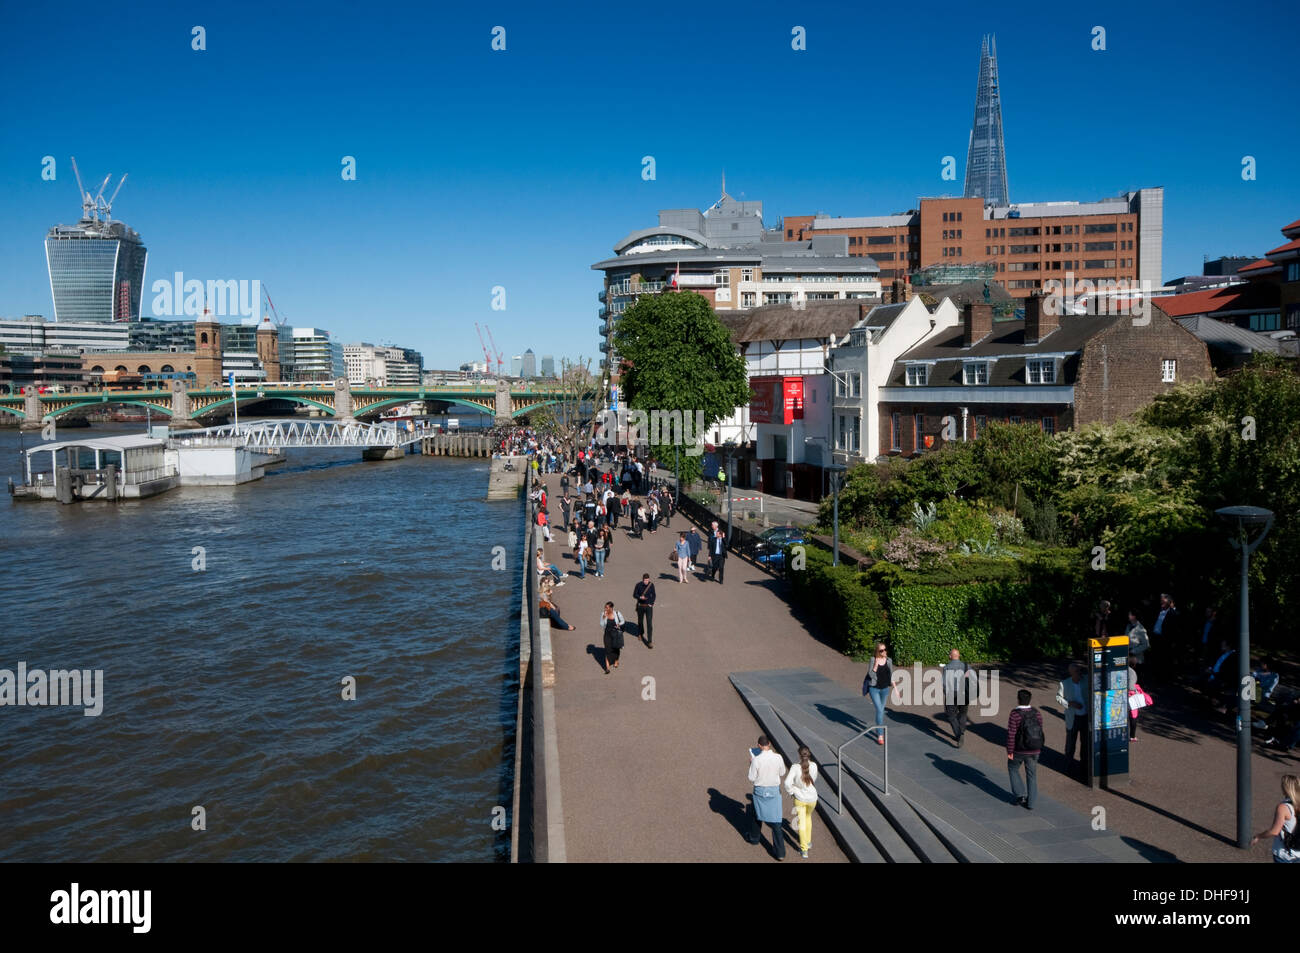 Inghilterra, Londra, Southwark, Thames Path, gente camminare lungo le rive del fiume Tamigi Foto Stock